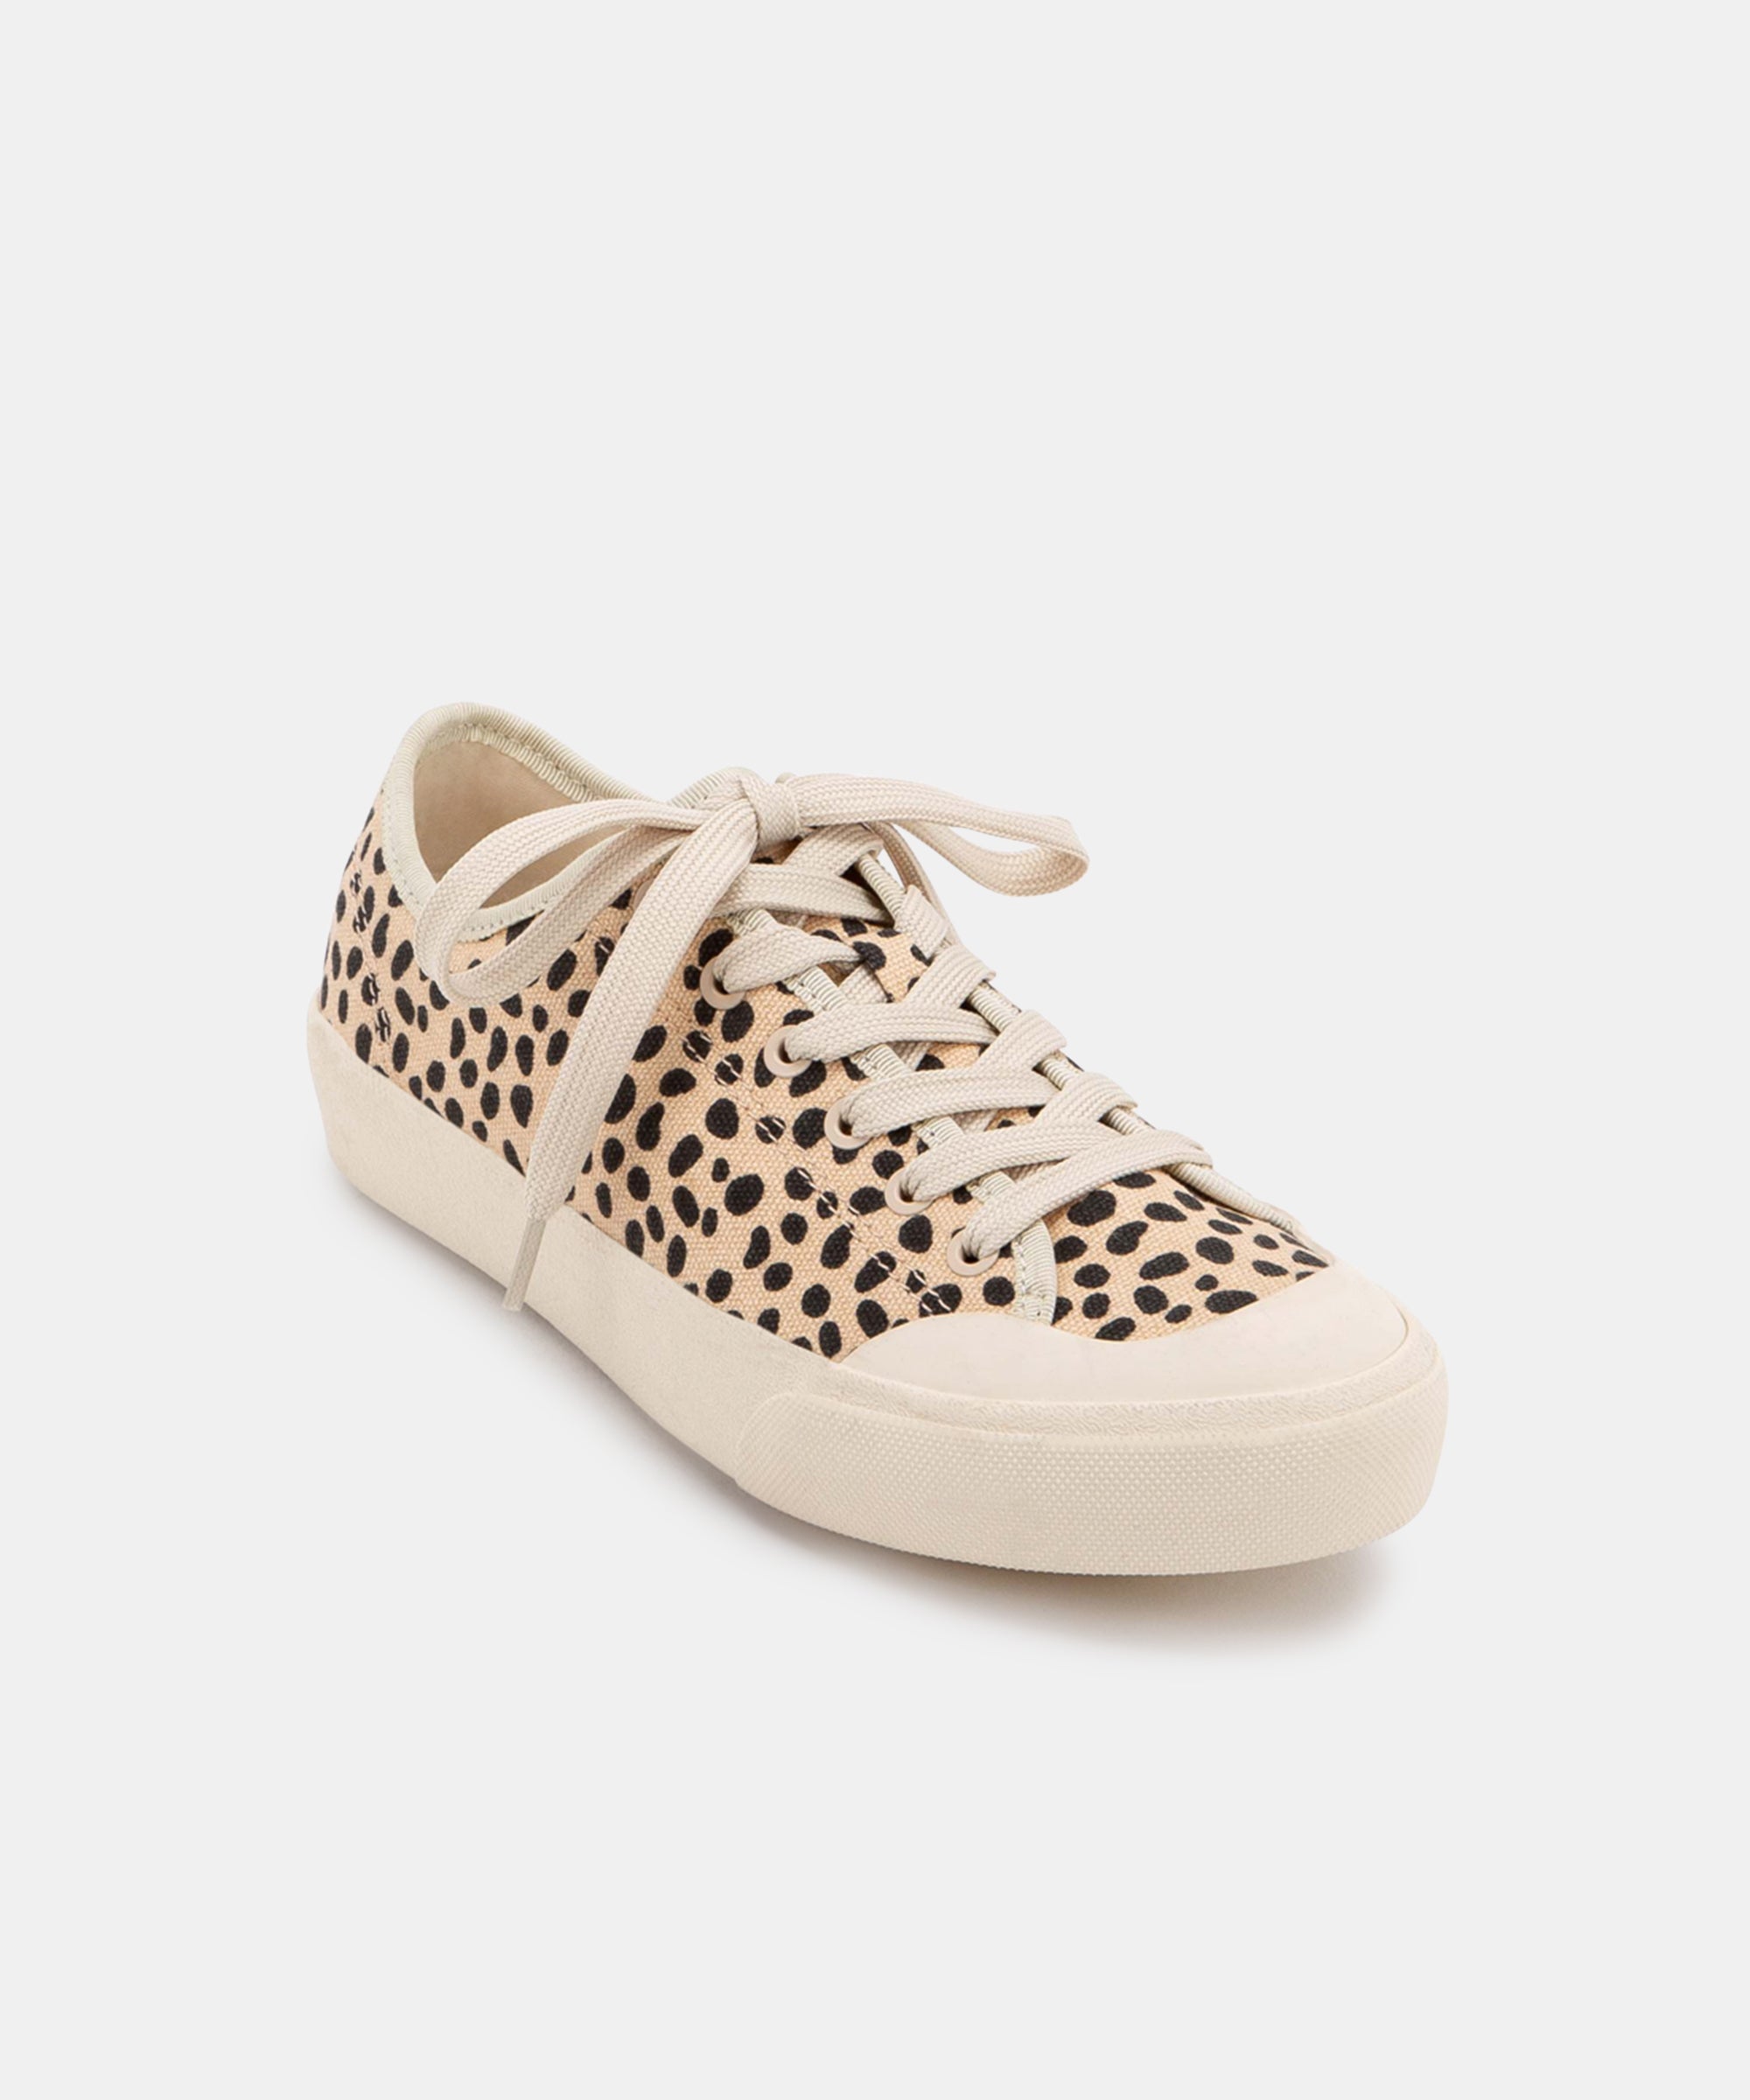 dolce vita leopard shoes